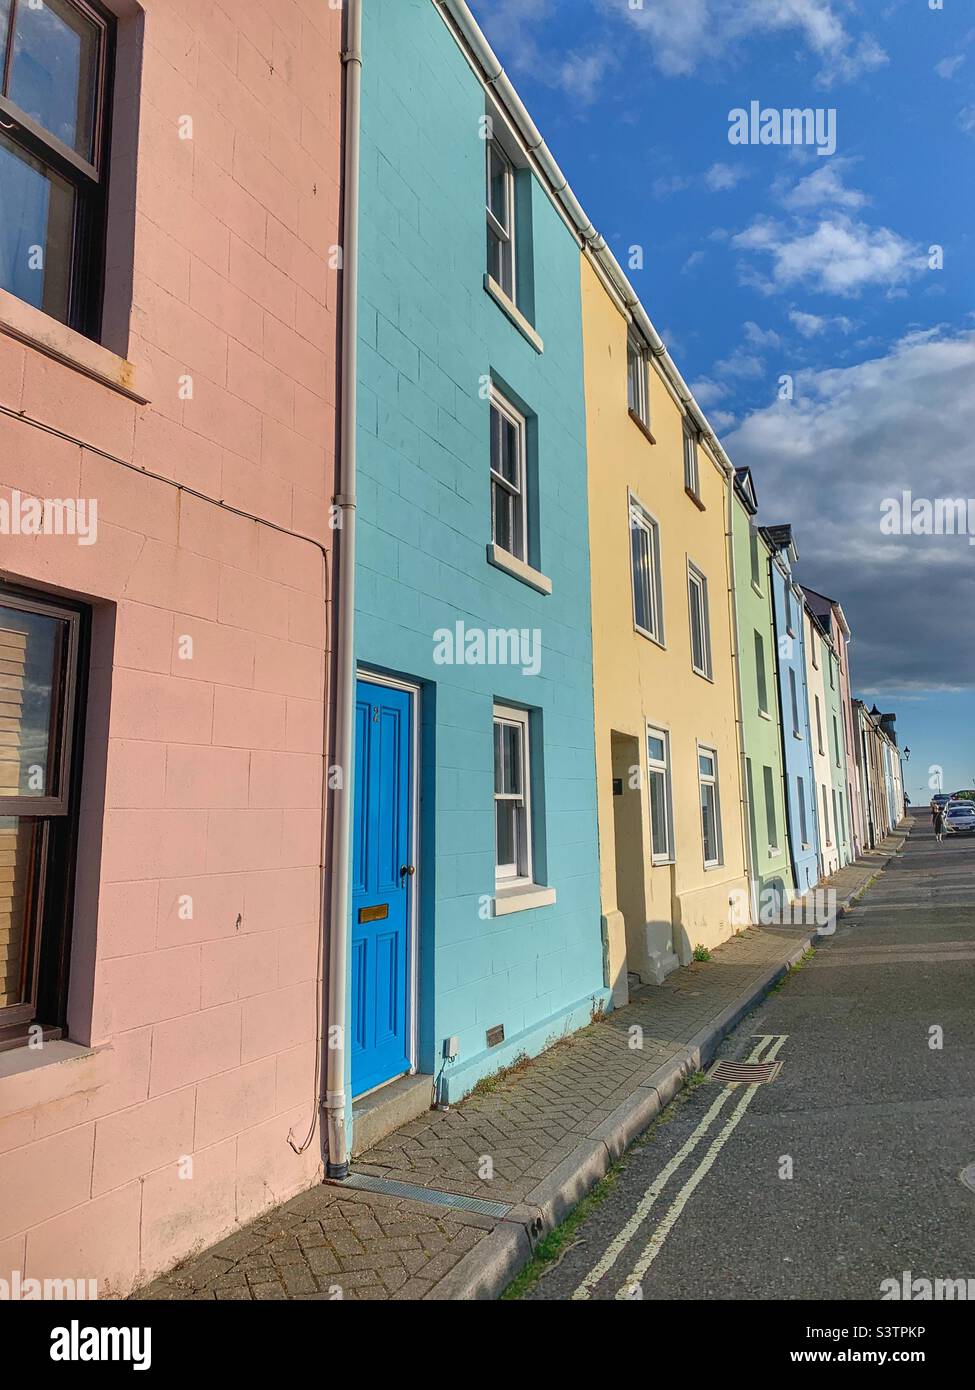 Maisons colorées sur l'île de Portland Weymouth Banque D'Images